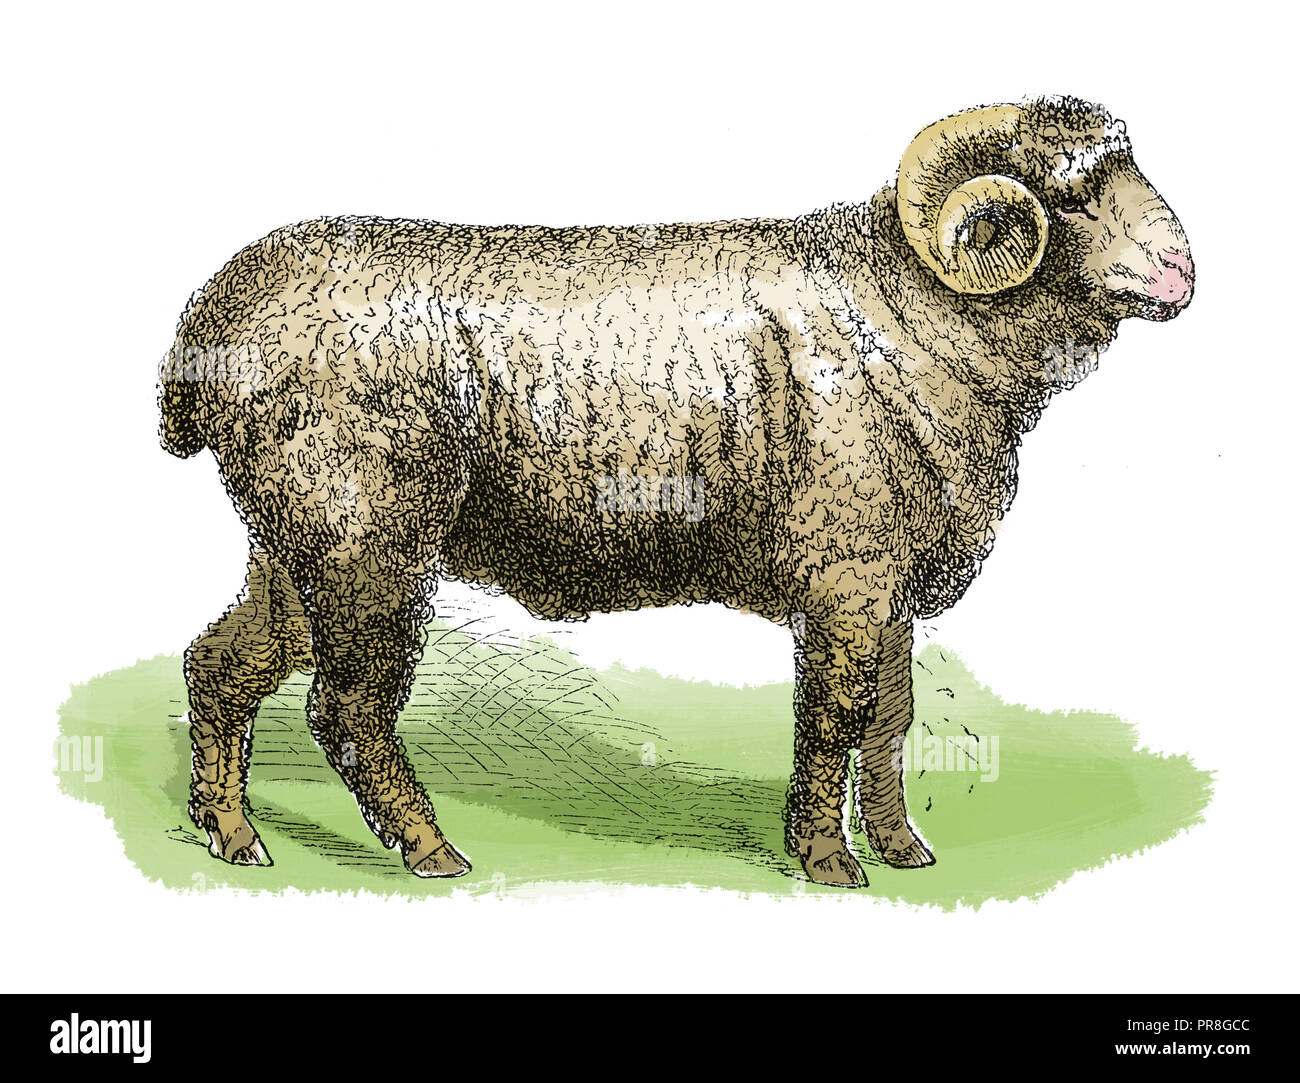 19th century illustration of a sheep. Published in Systematischer Bilder-Atlas zum Conversations-Lexikon, Ikonographische Encyklopaedie der Wissenscha Stock Photo